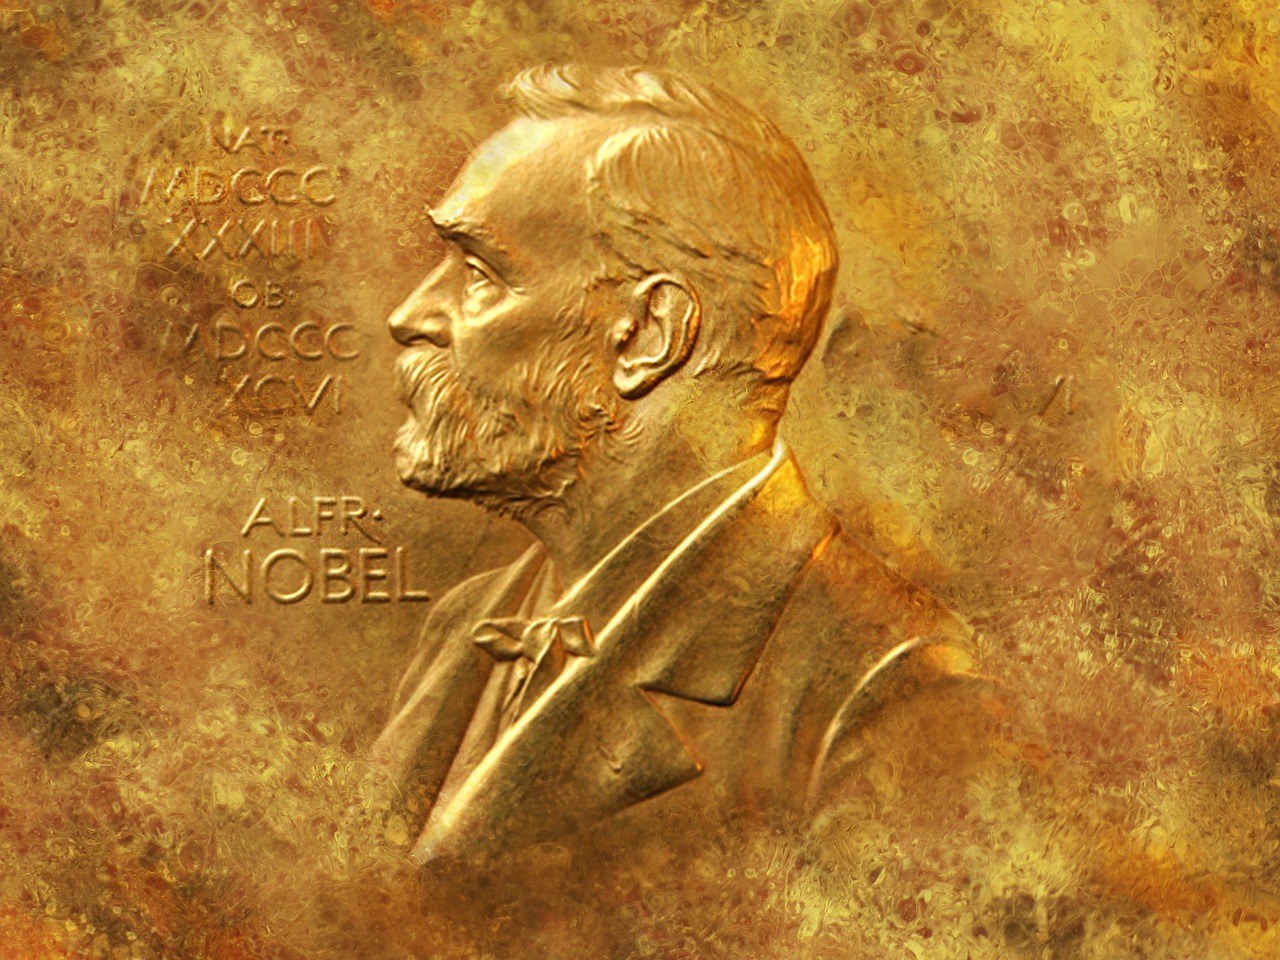 Nobelova nagrada za ekonomiju Nordhausu i Romeru